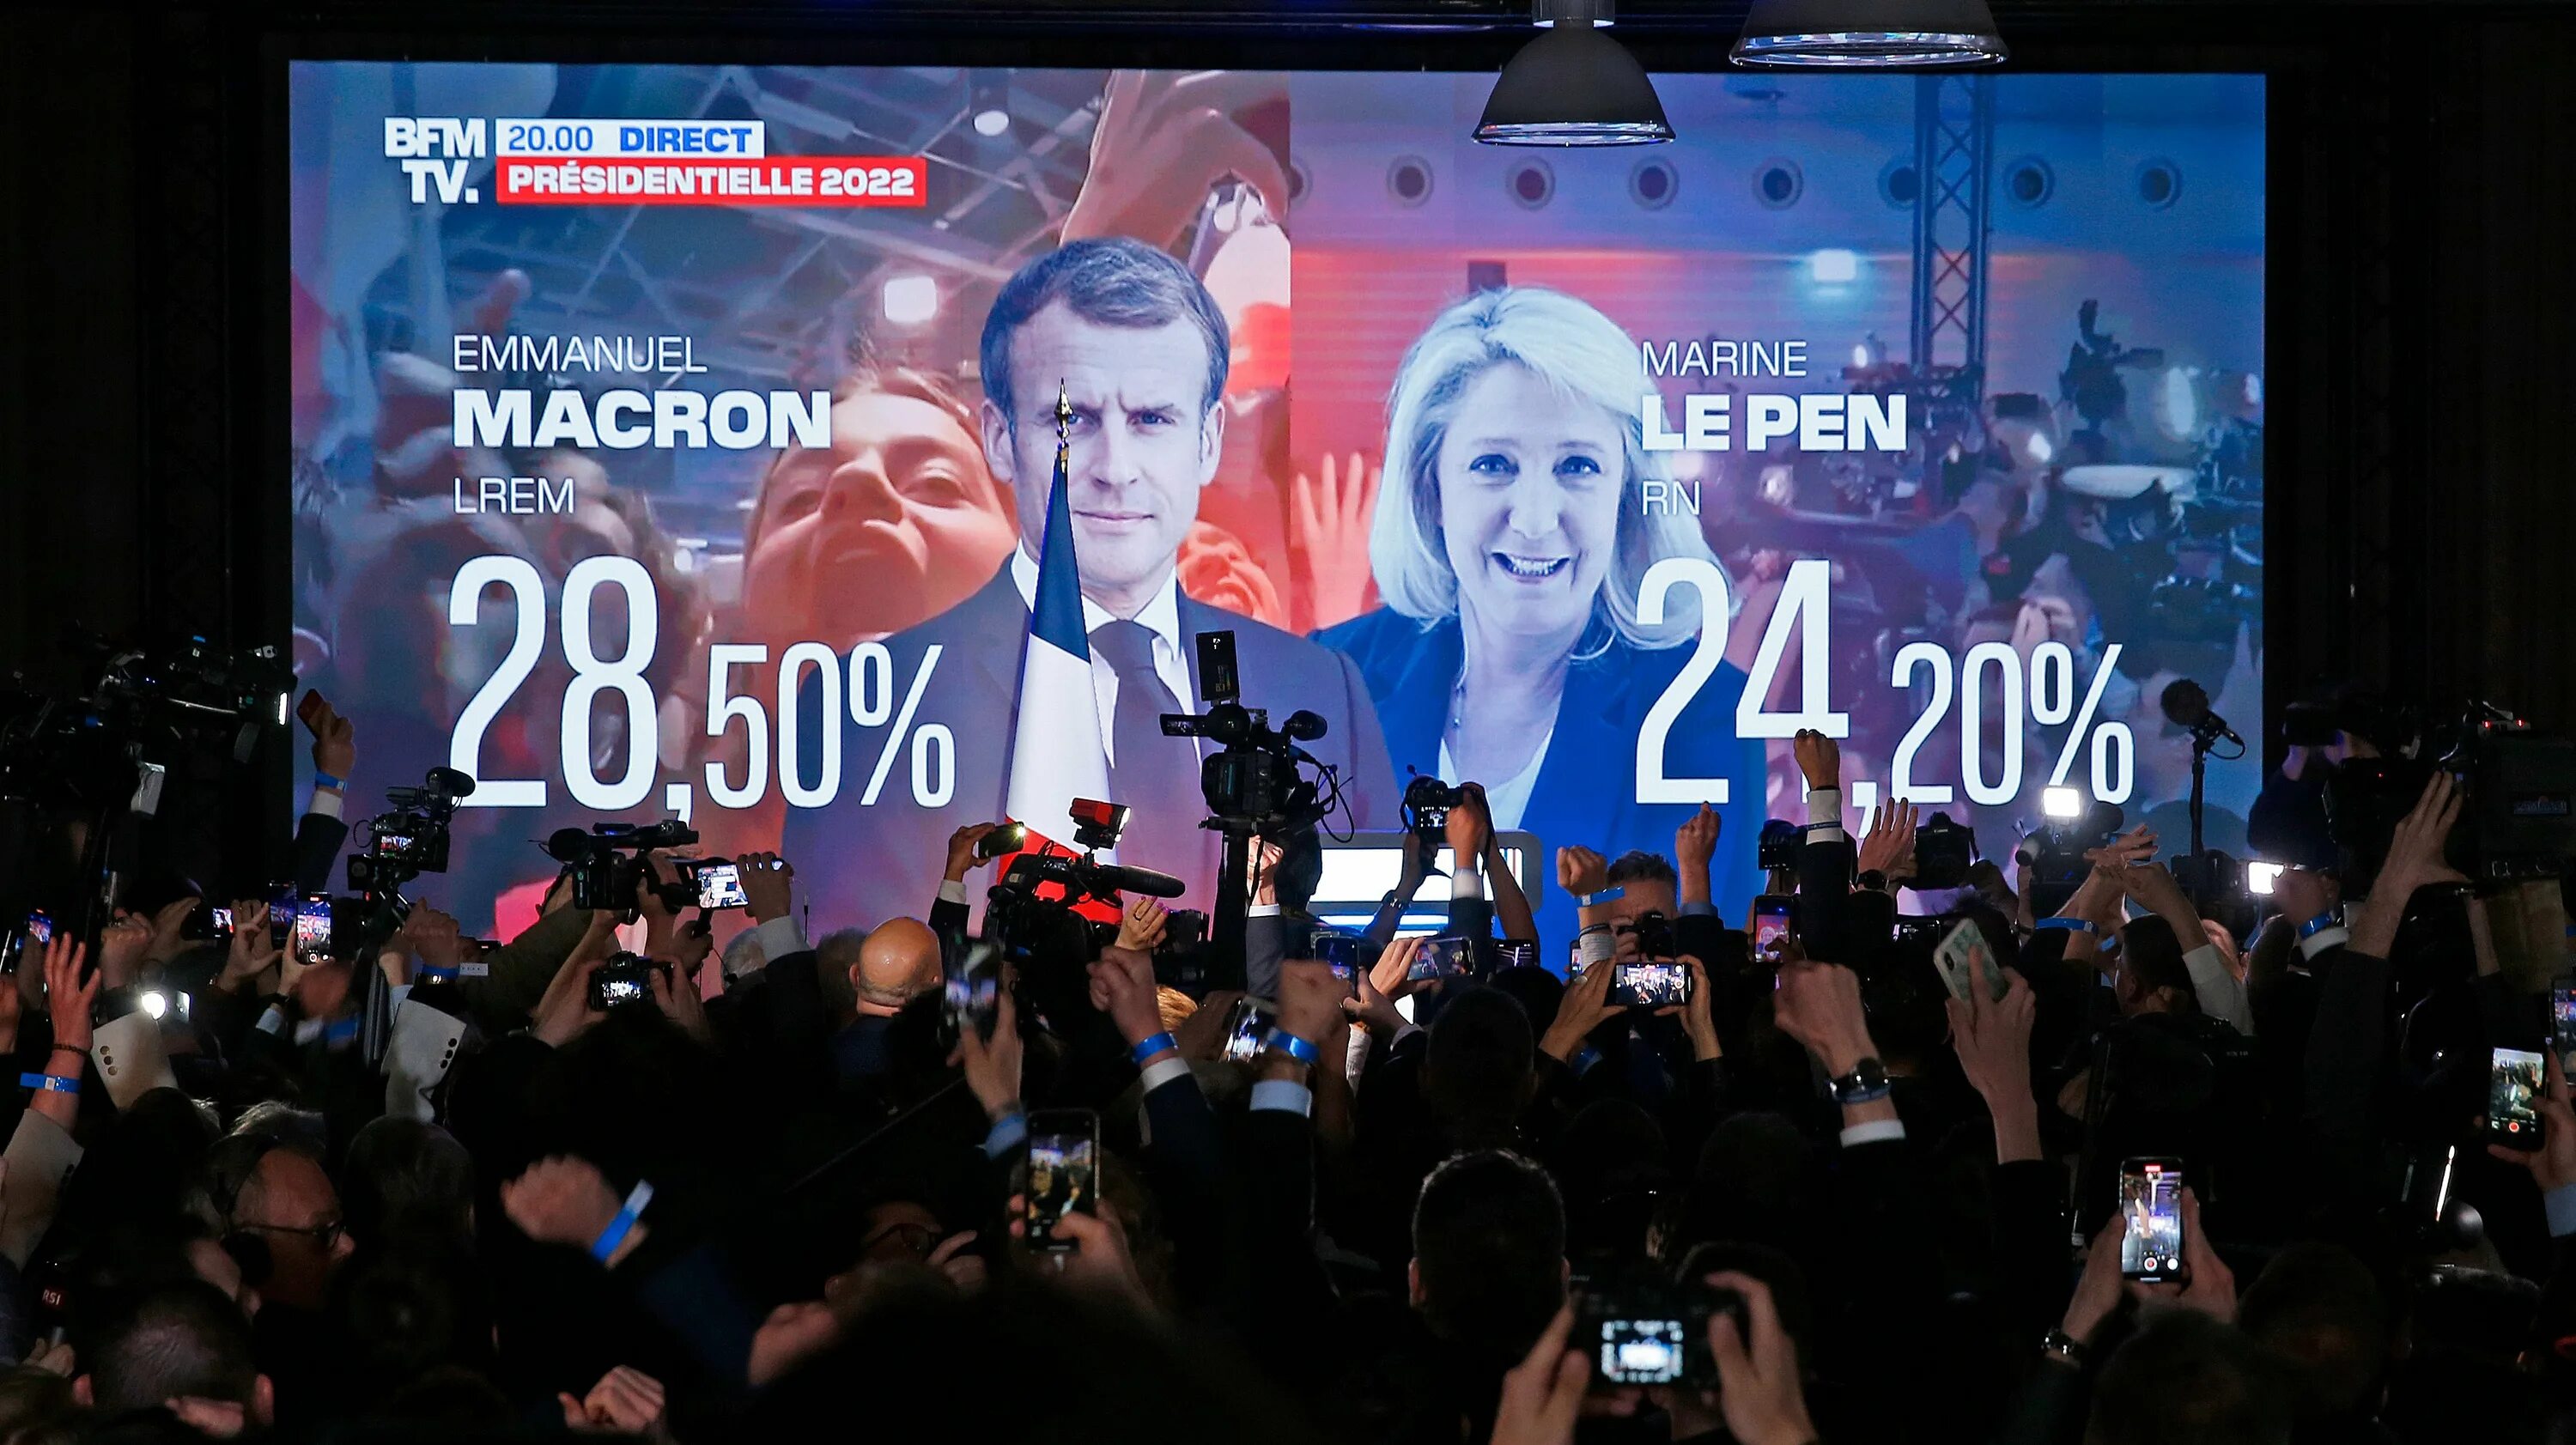 Второй тур президентских. Макрон выборы во Франции 2022. Президентские выборы во Франции (2022). Выборы во Франции 2022 2 тур.